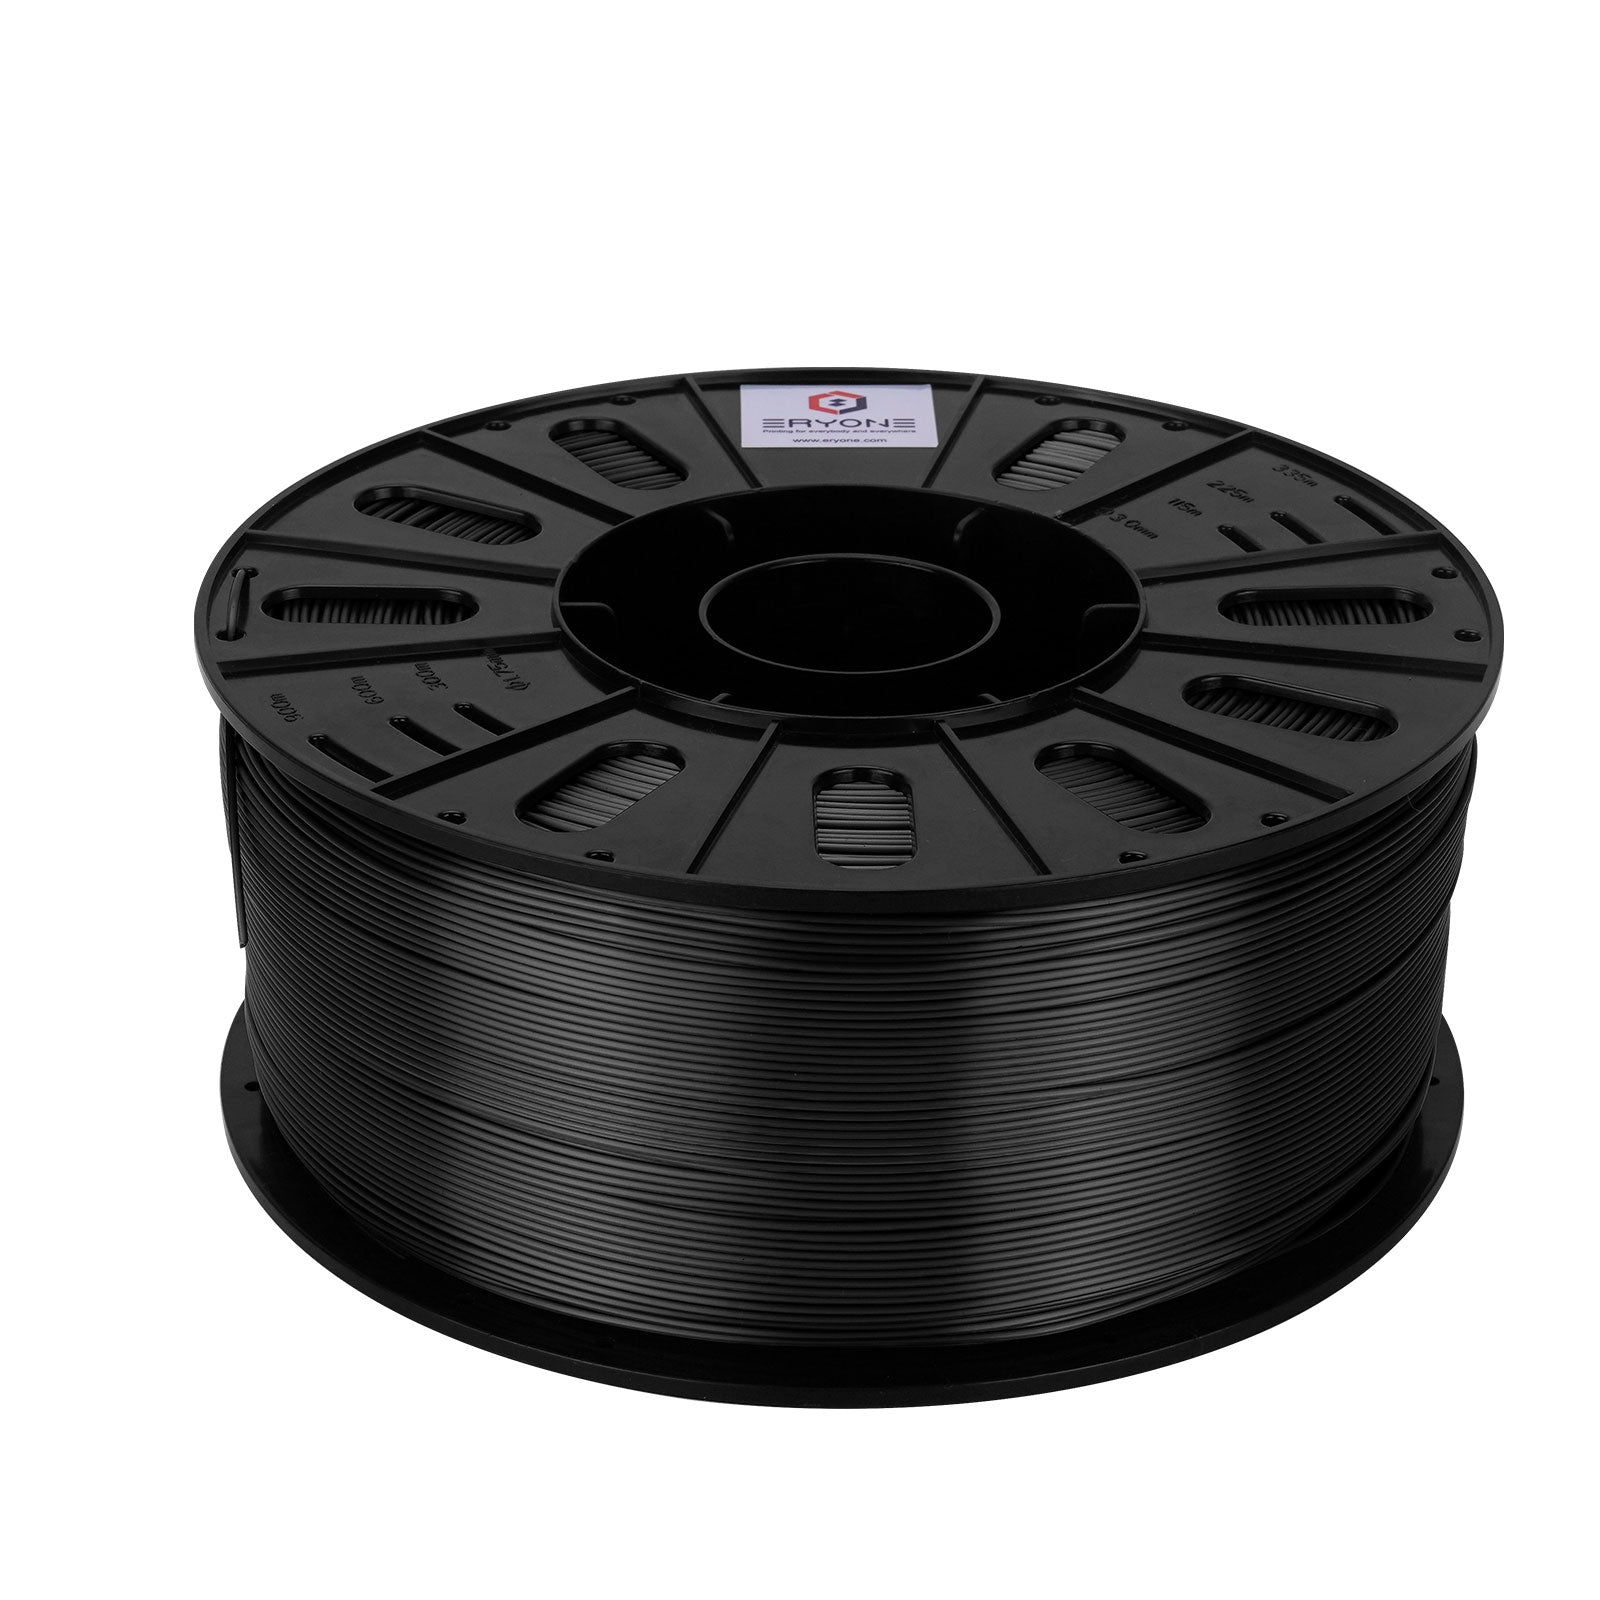 Filament PLA en soie tricolore ERYONE 1,75 mm, filament pour imprimante 3D  PLA +/-0,03 mm 1 kg/bobine, soie pourriture or et lila